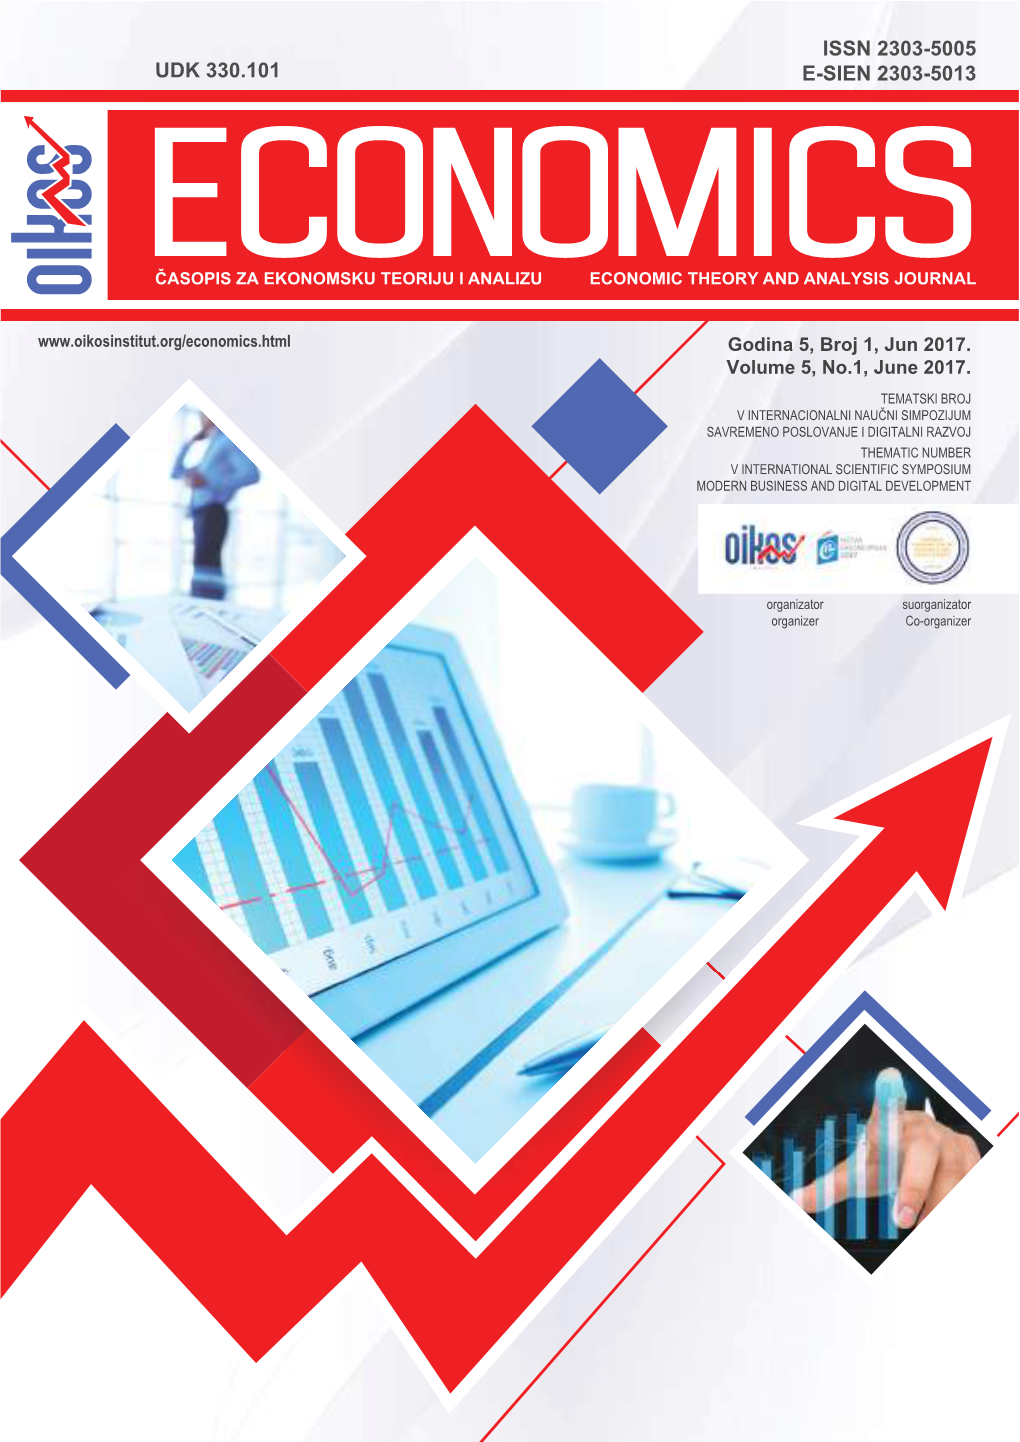 Časopis Economics, Broj 8